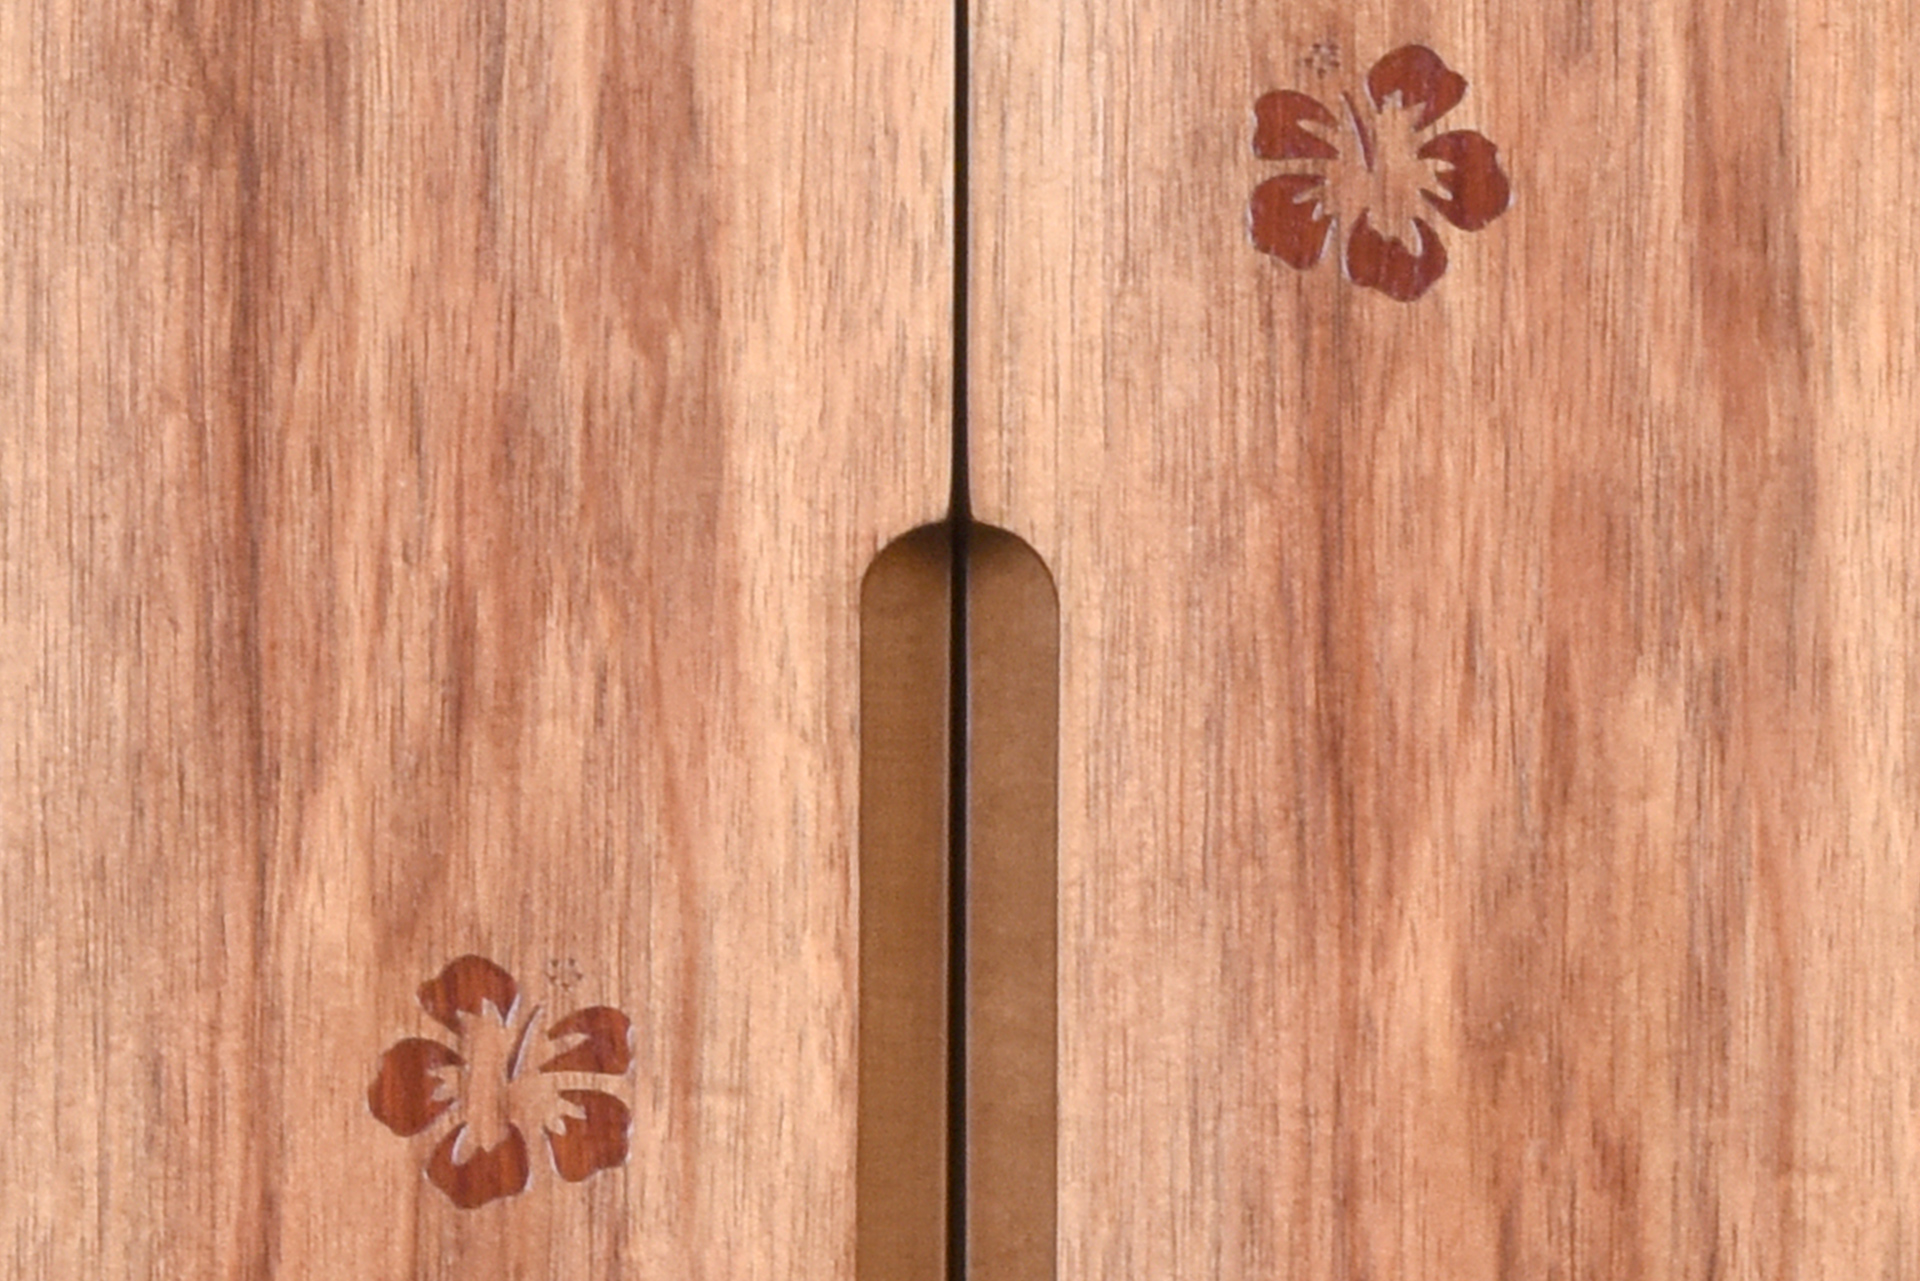 戸板に、象嵌の技法を用いてハイビスカスのモチーフをあしらいました。